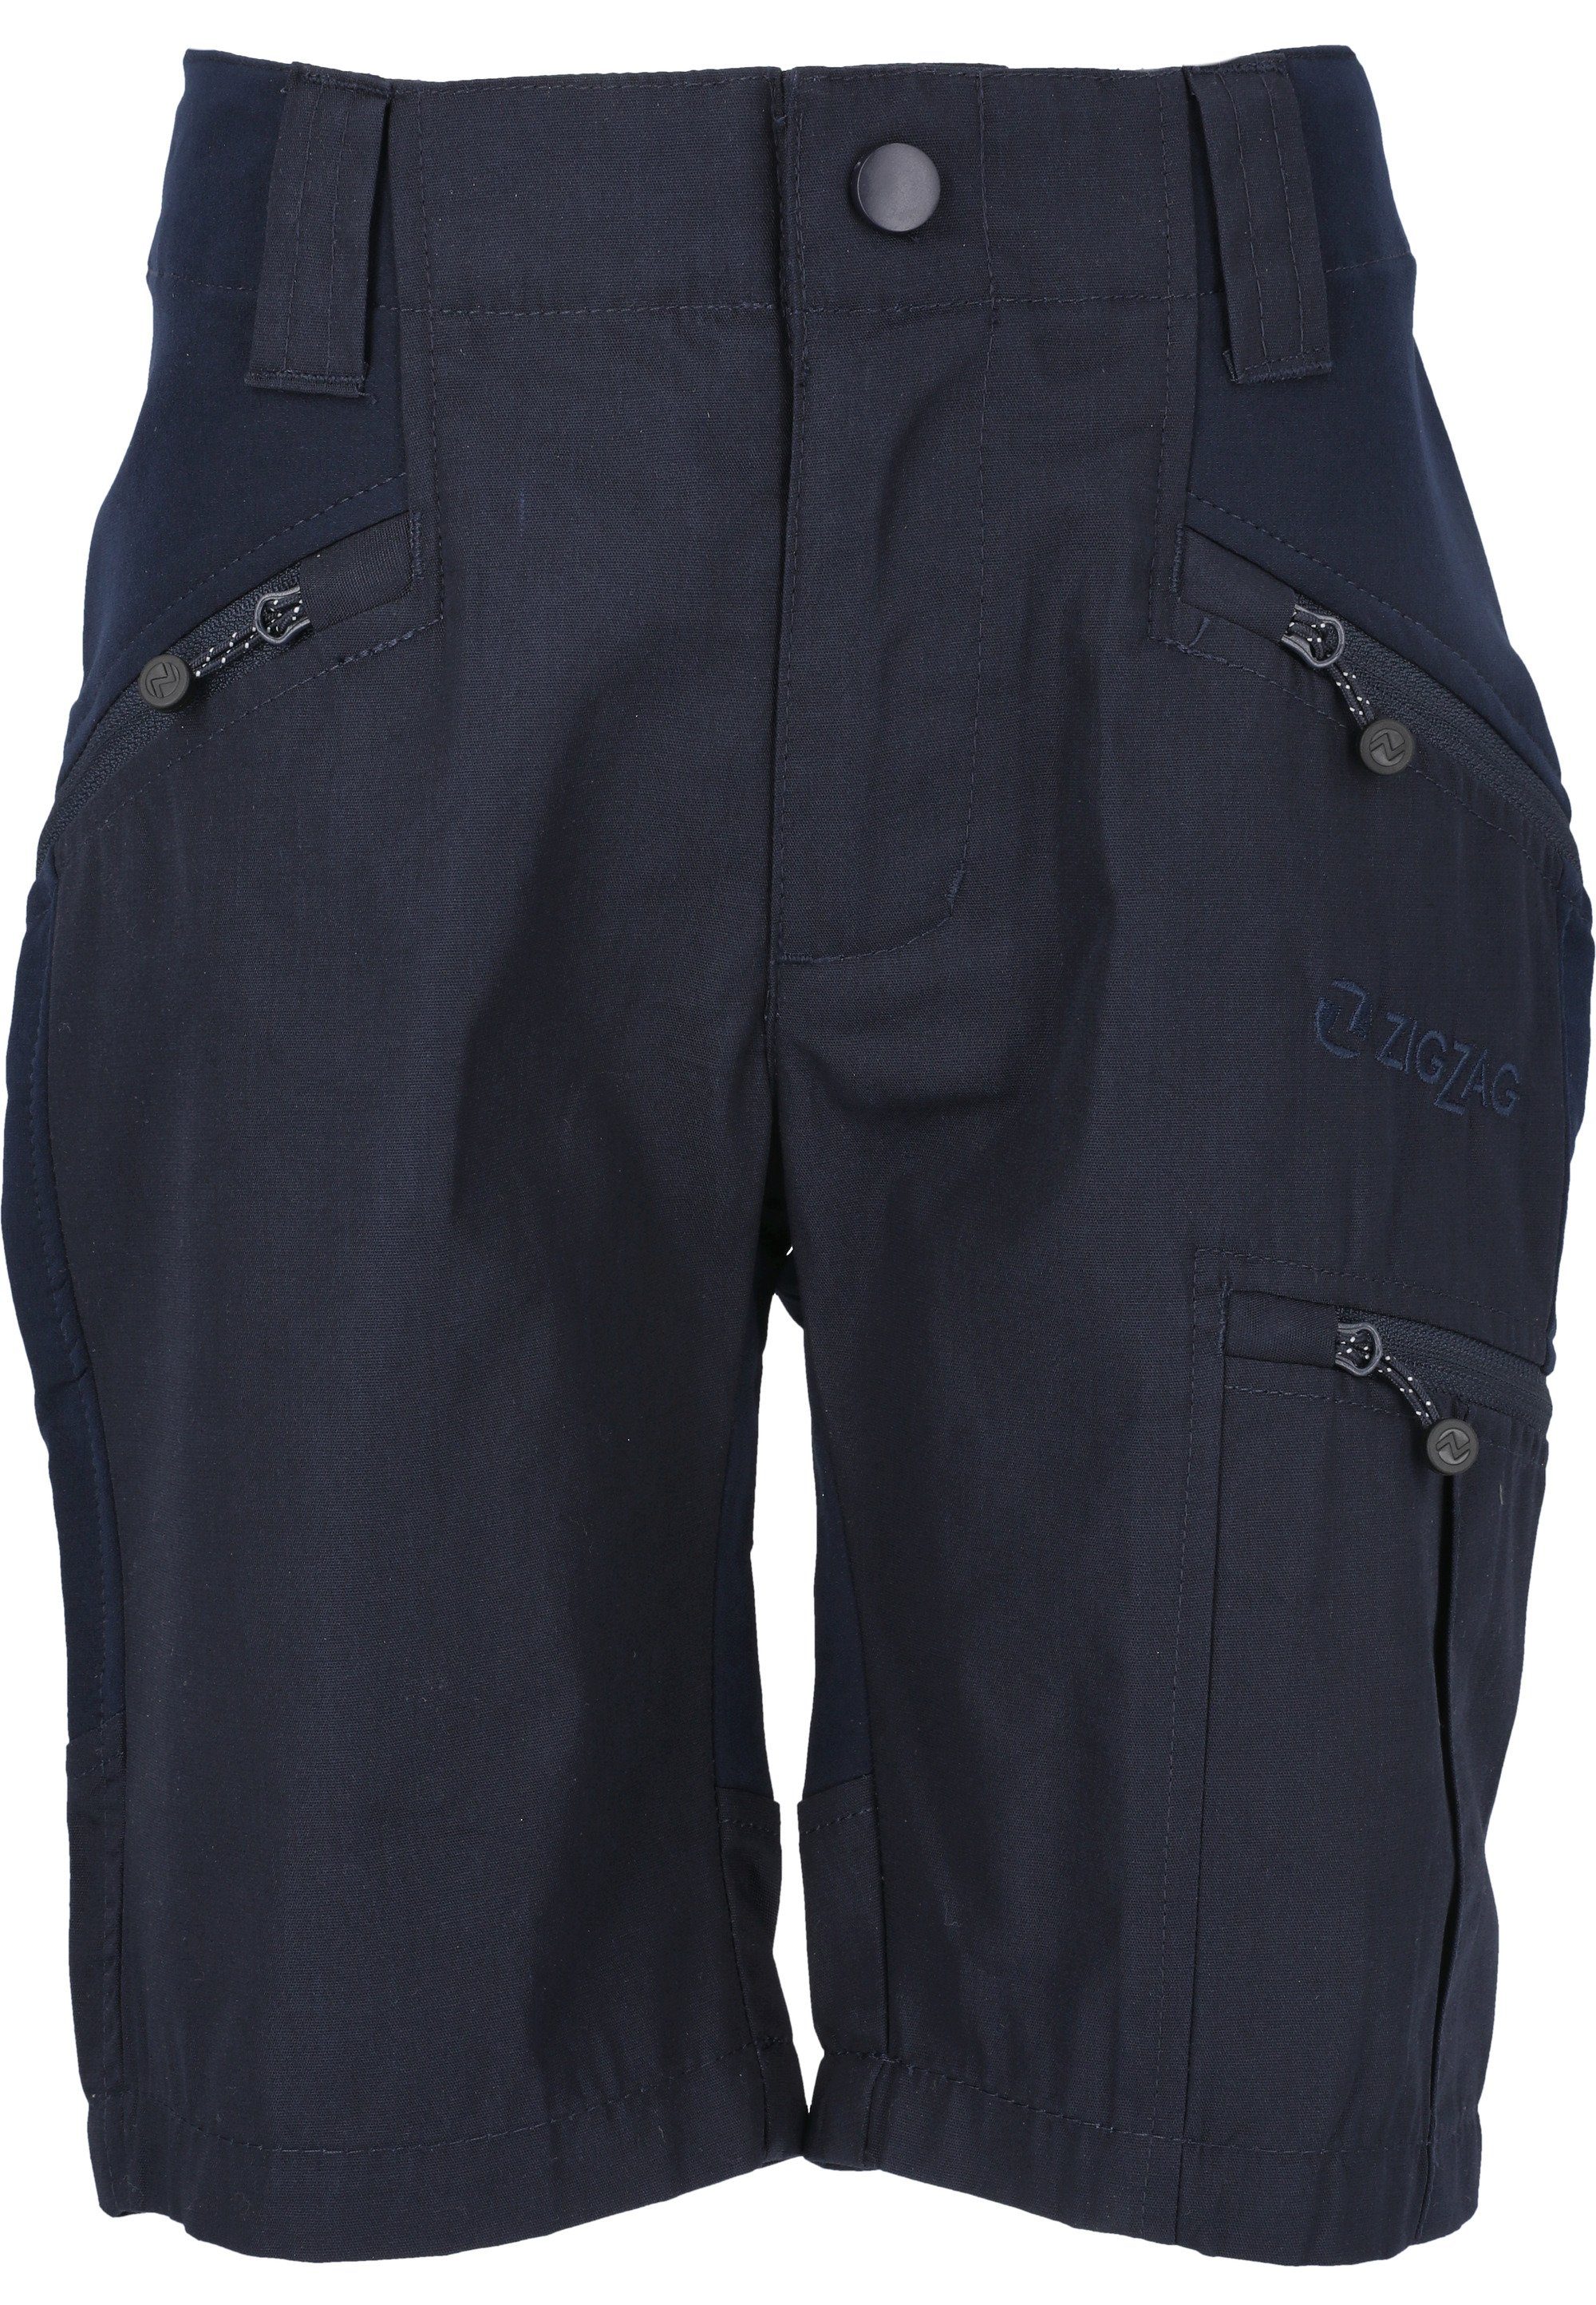 Bono Shorts dank praktisch Dehnbund, Reißverschlusstaschen Besonders mit ZIGZAG praktischem